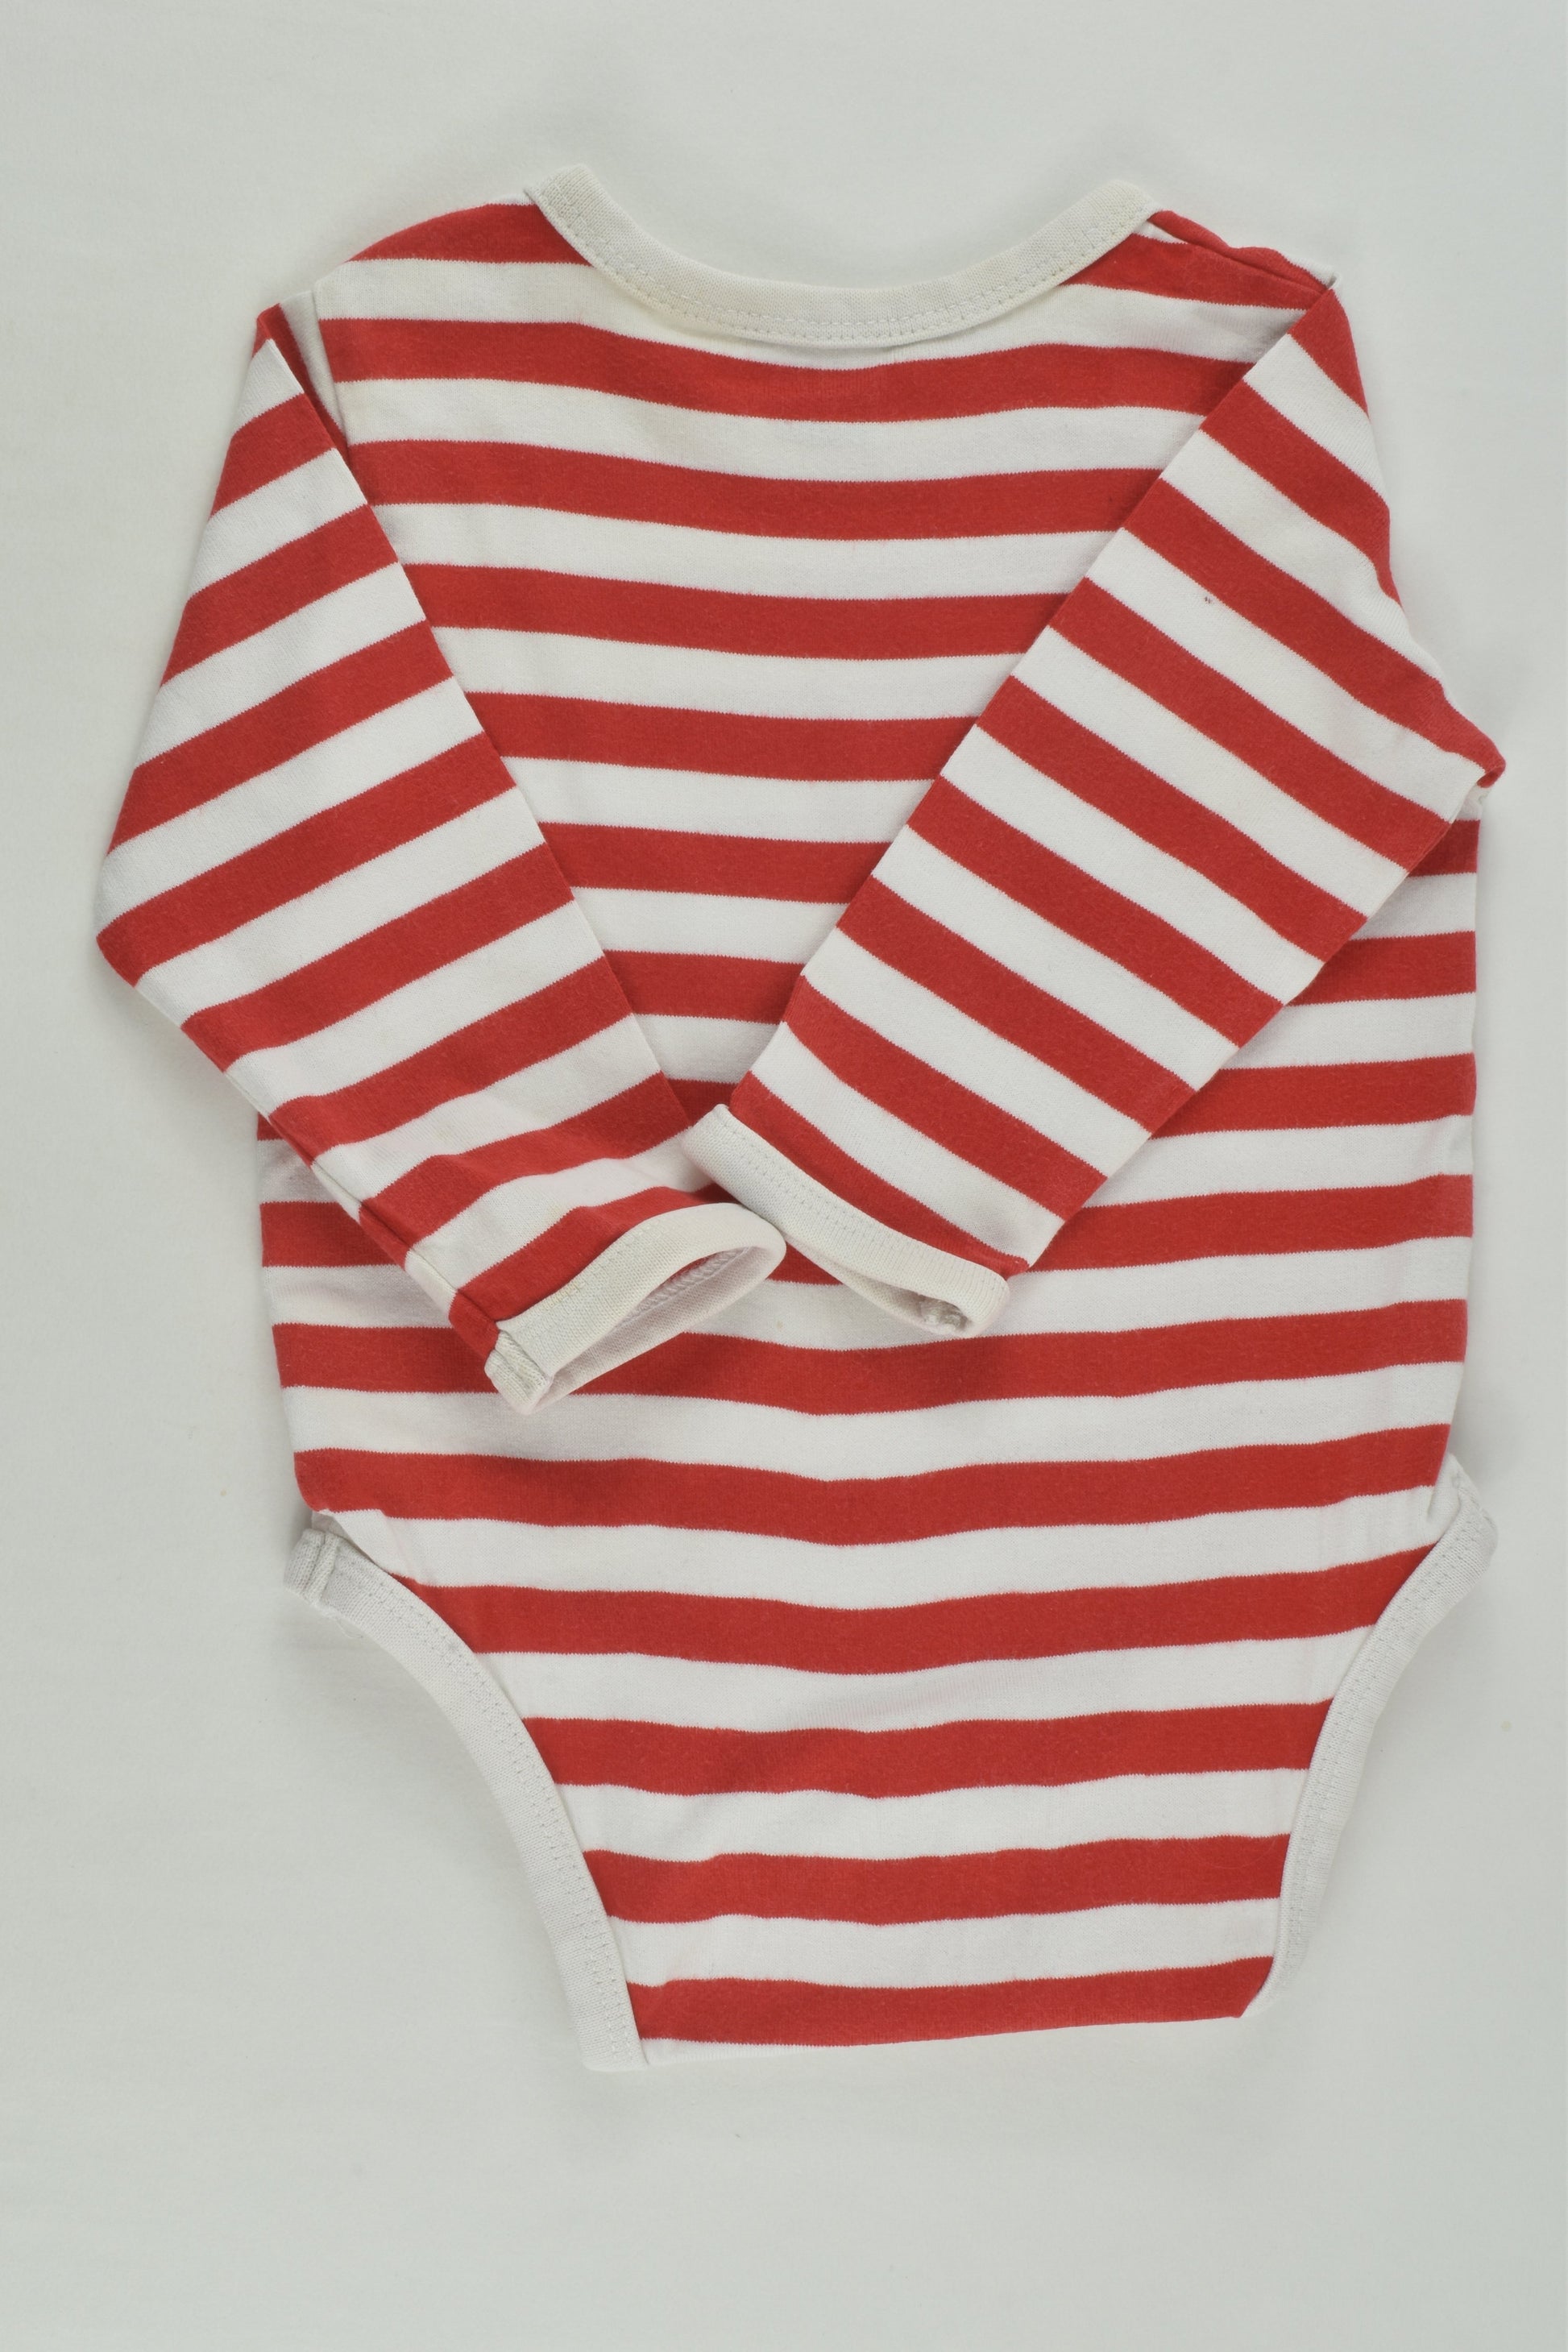 Marimekko Finland Size 000 (3months) Striped Bodysuit